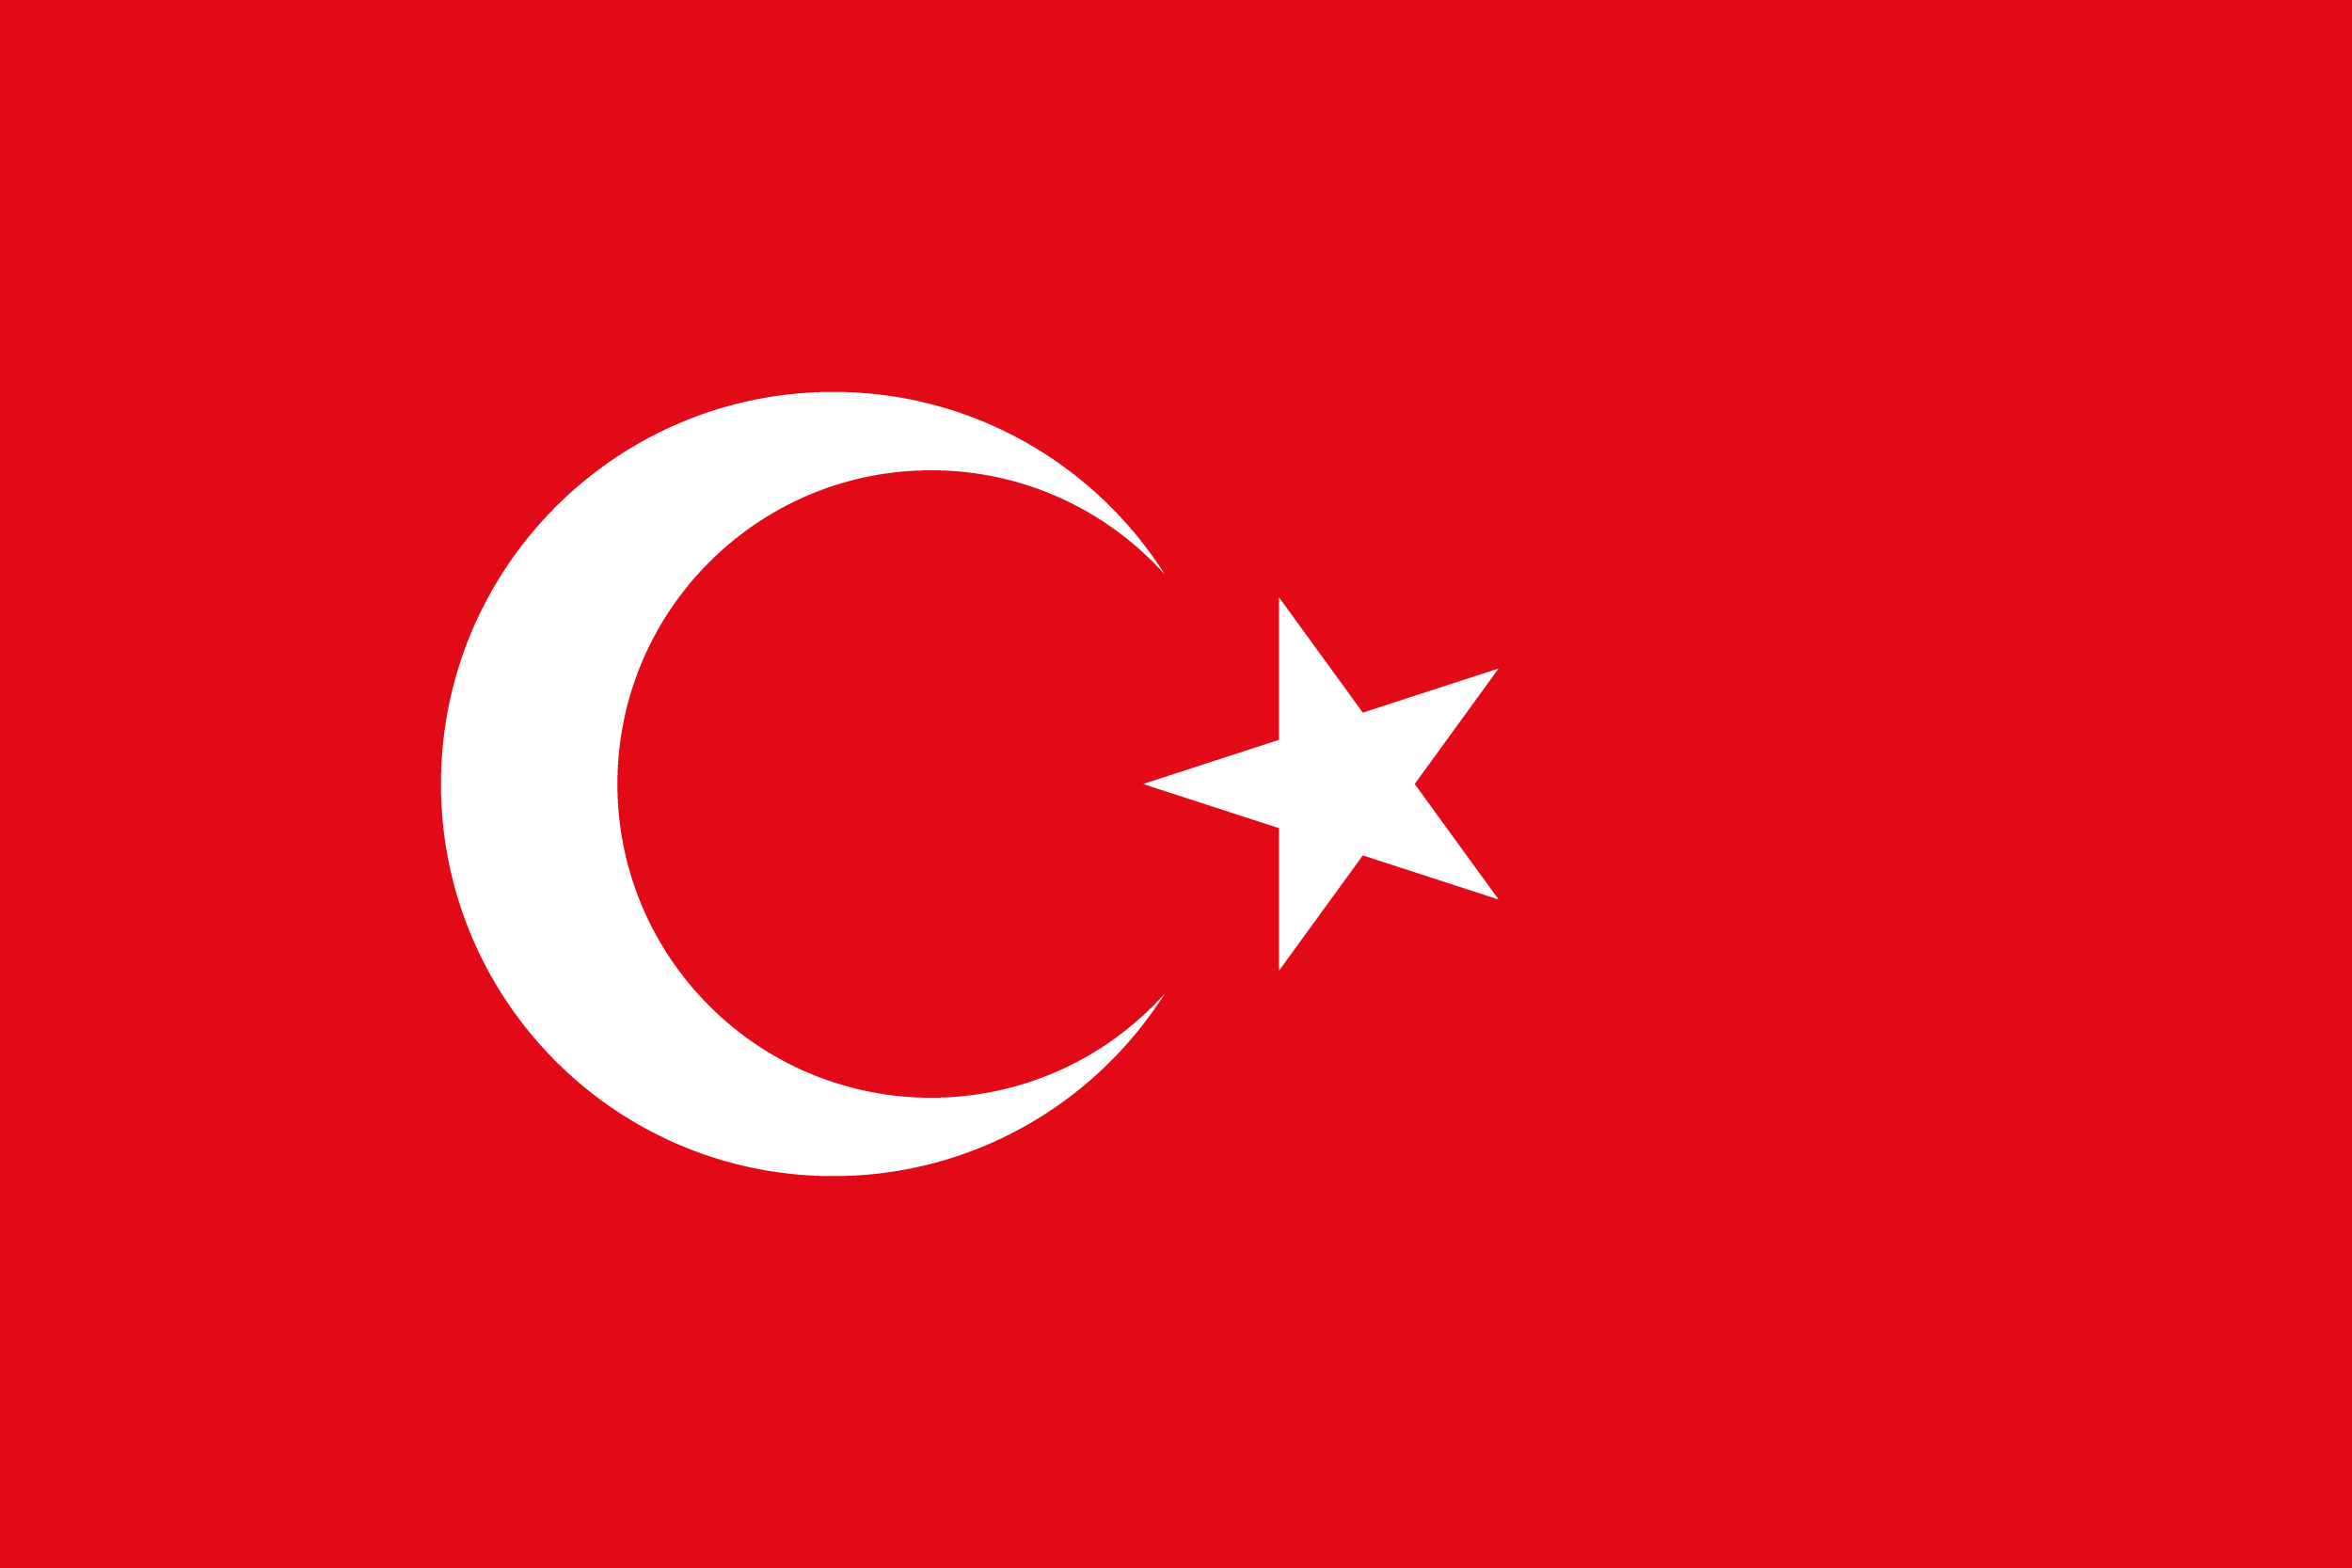 トルコ国旗の特徴や意味 由来 誕生年 フリーイラストや画像を徹底的に解説します 世界国旗ポータルサイト ワールドフラッグス